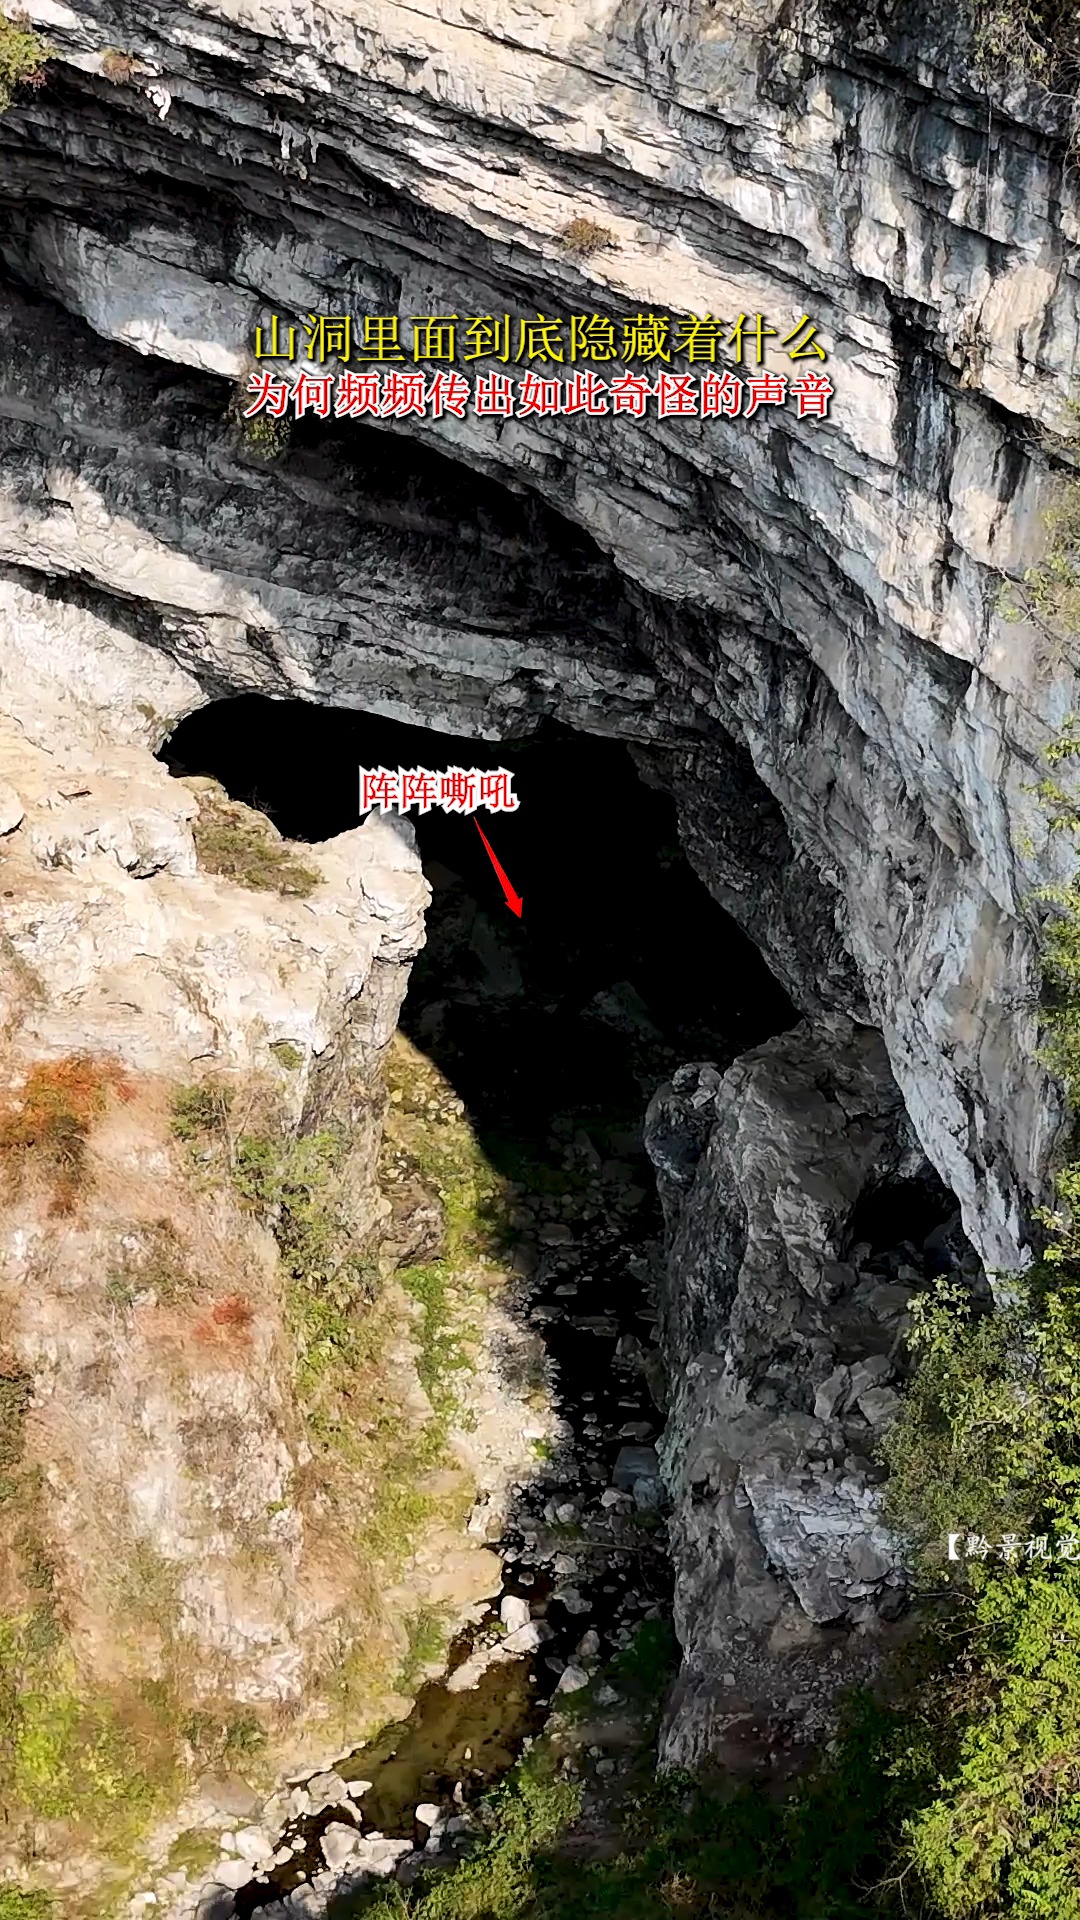 山洞里面到底隐藏着什么？为何频频发出如此奇怪的声音？#神秘#山洞到底藏着什么 #不可思议